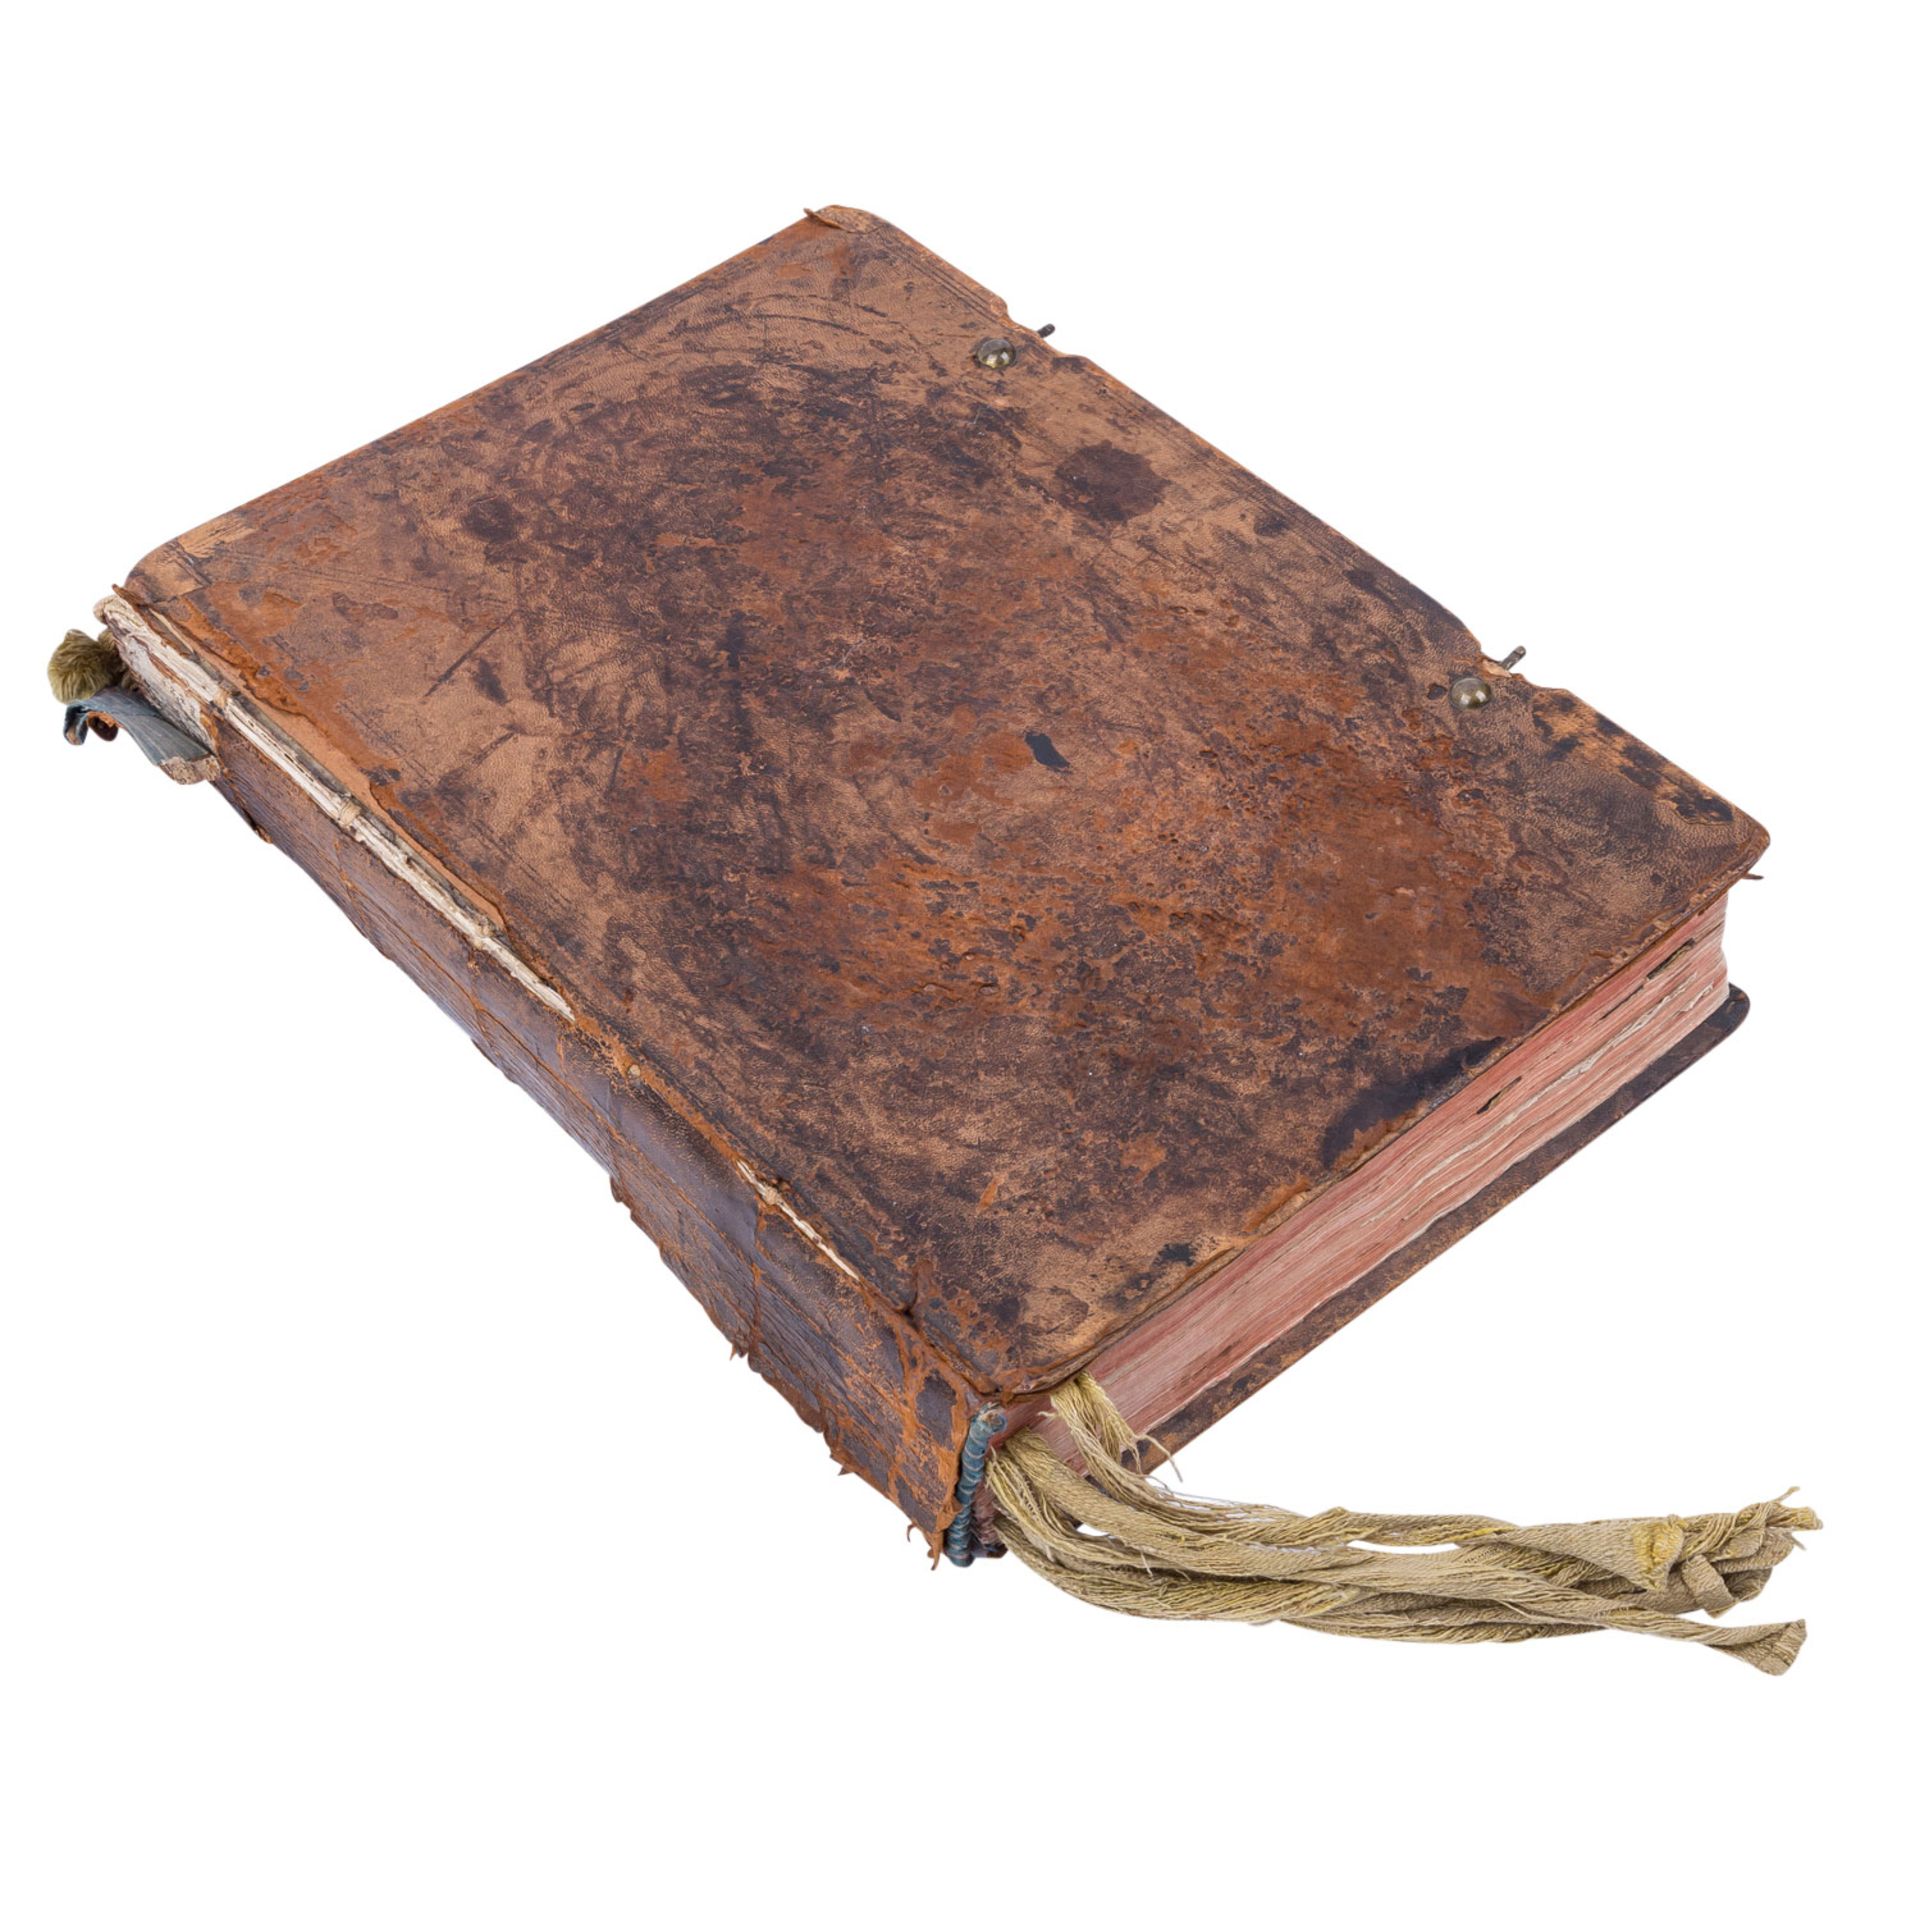 'Missale Romanum' - Römisches Messbuch aus dem Dekret des Sakrosankts von 1777. - Image 4 of 6